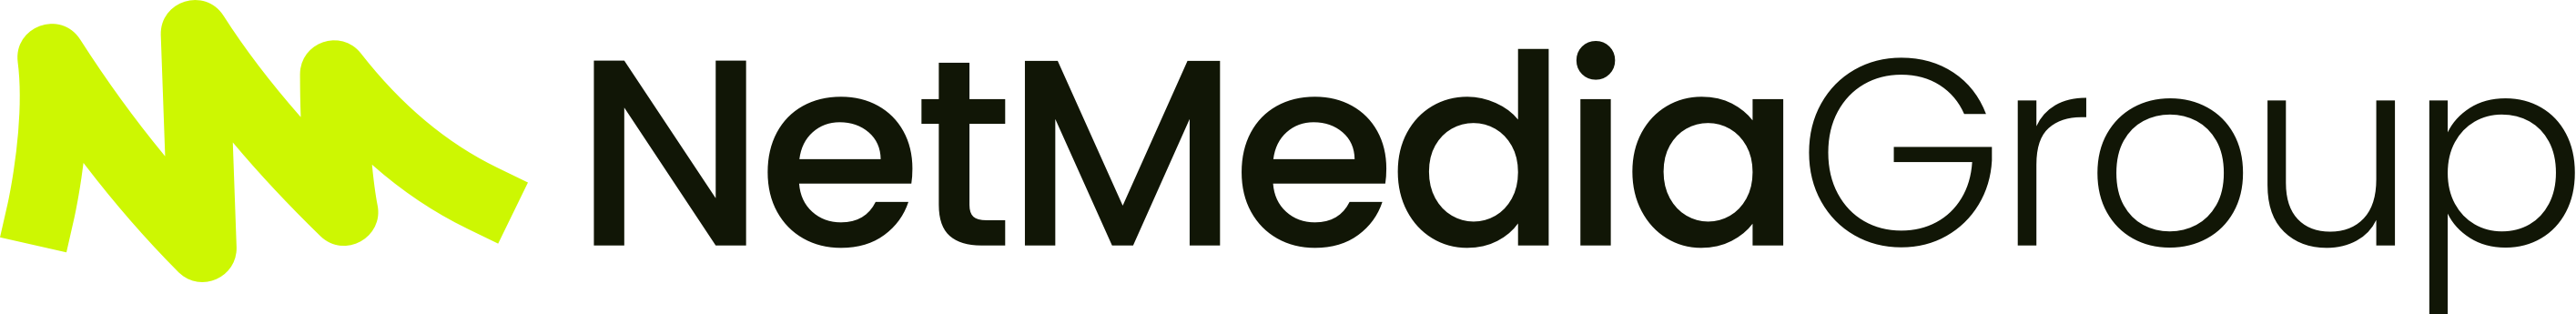 NETMEDIA Group